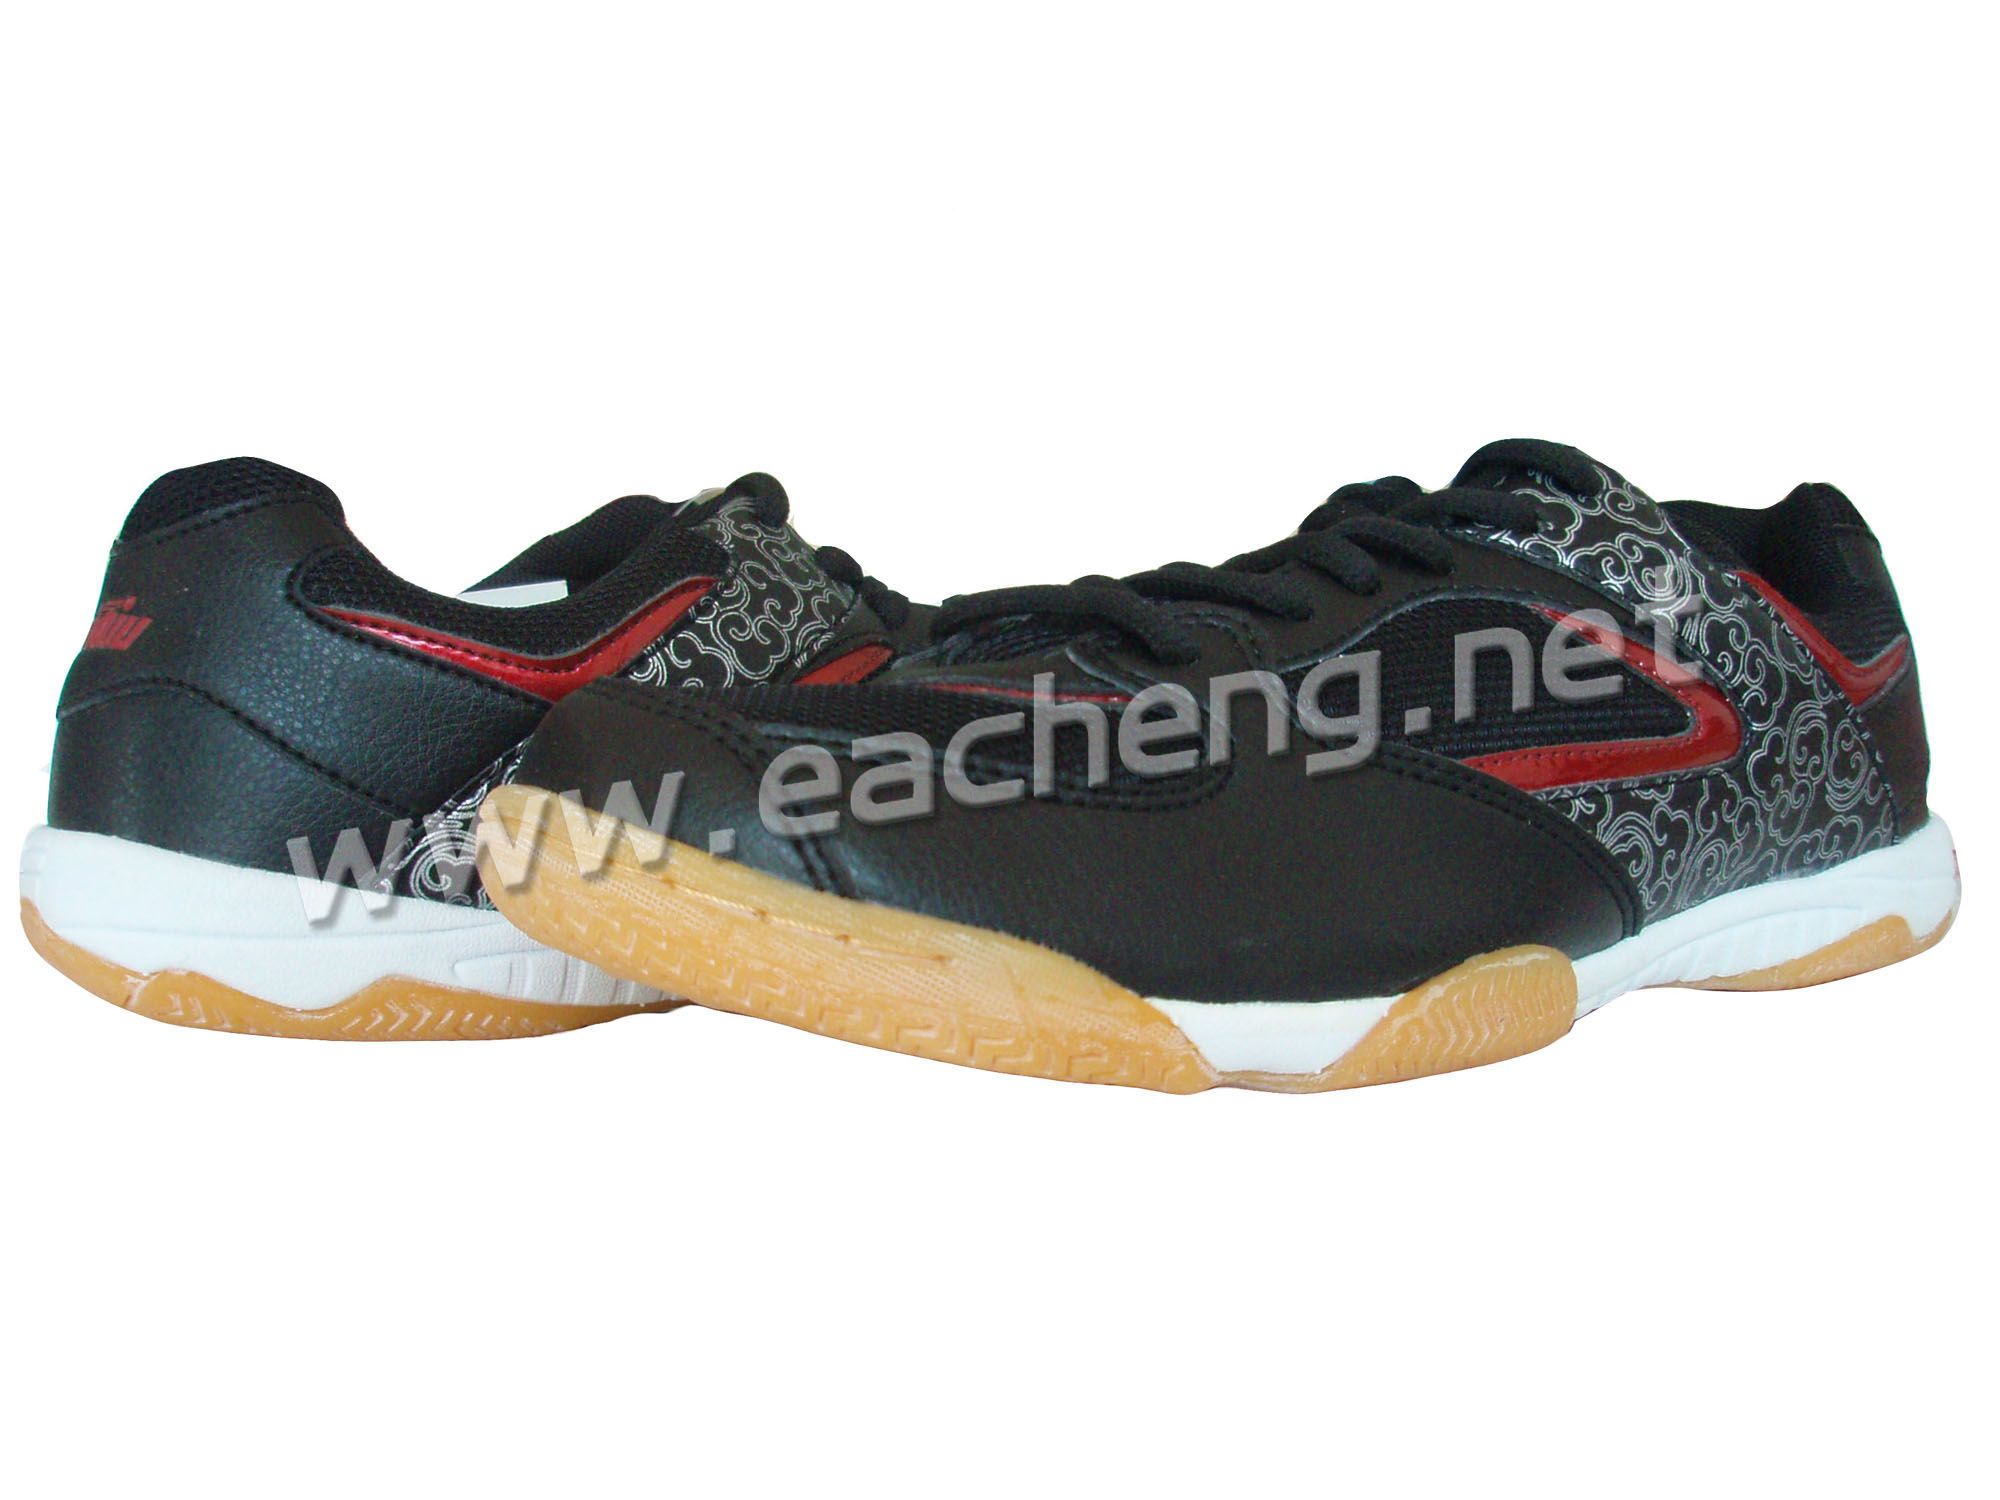 US$ 9.77 - Guo qiu GX-1009 Table Tennis Shoes - www.eacheng.net